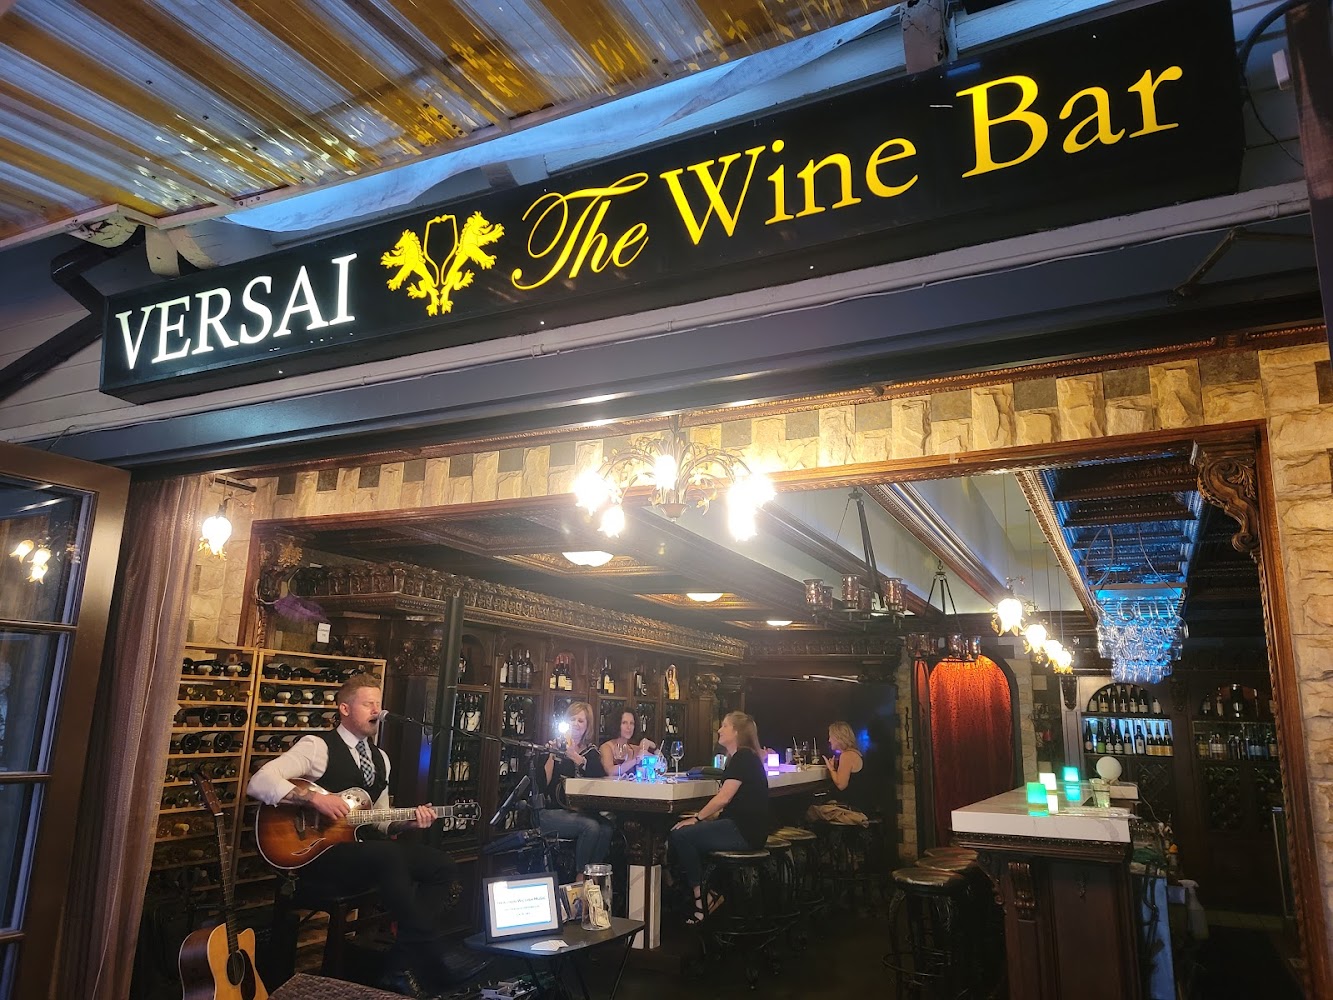 Versai the Wine Bar